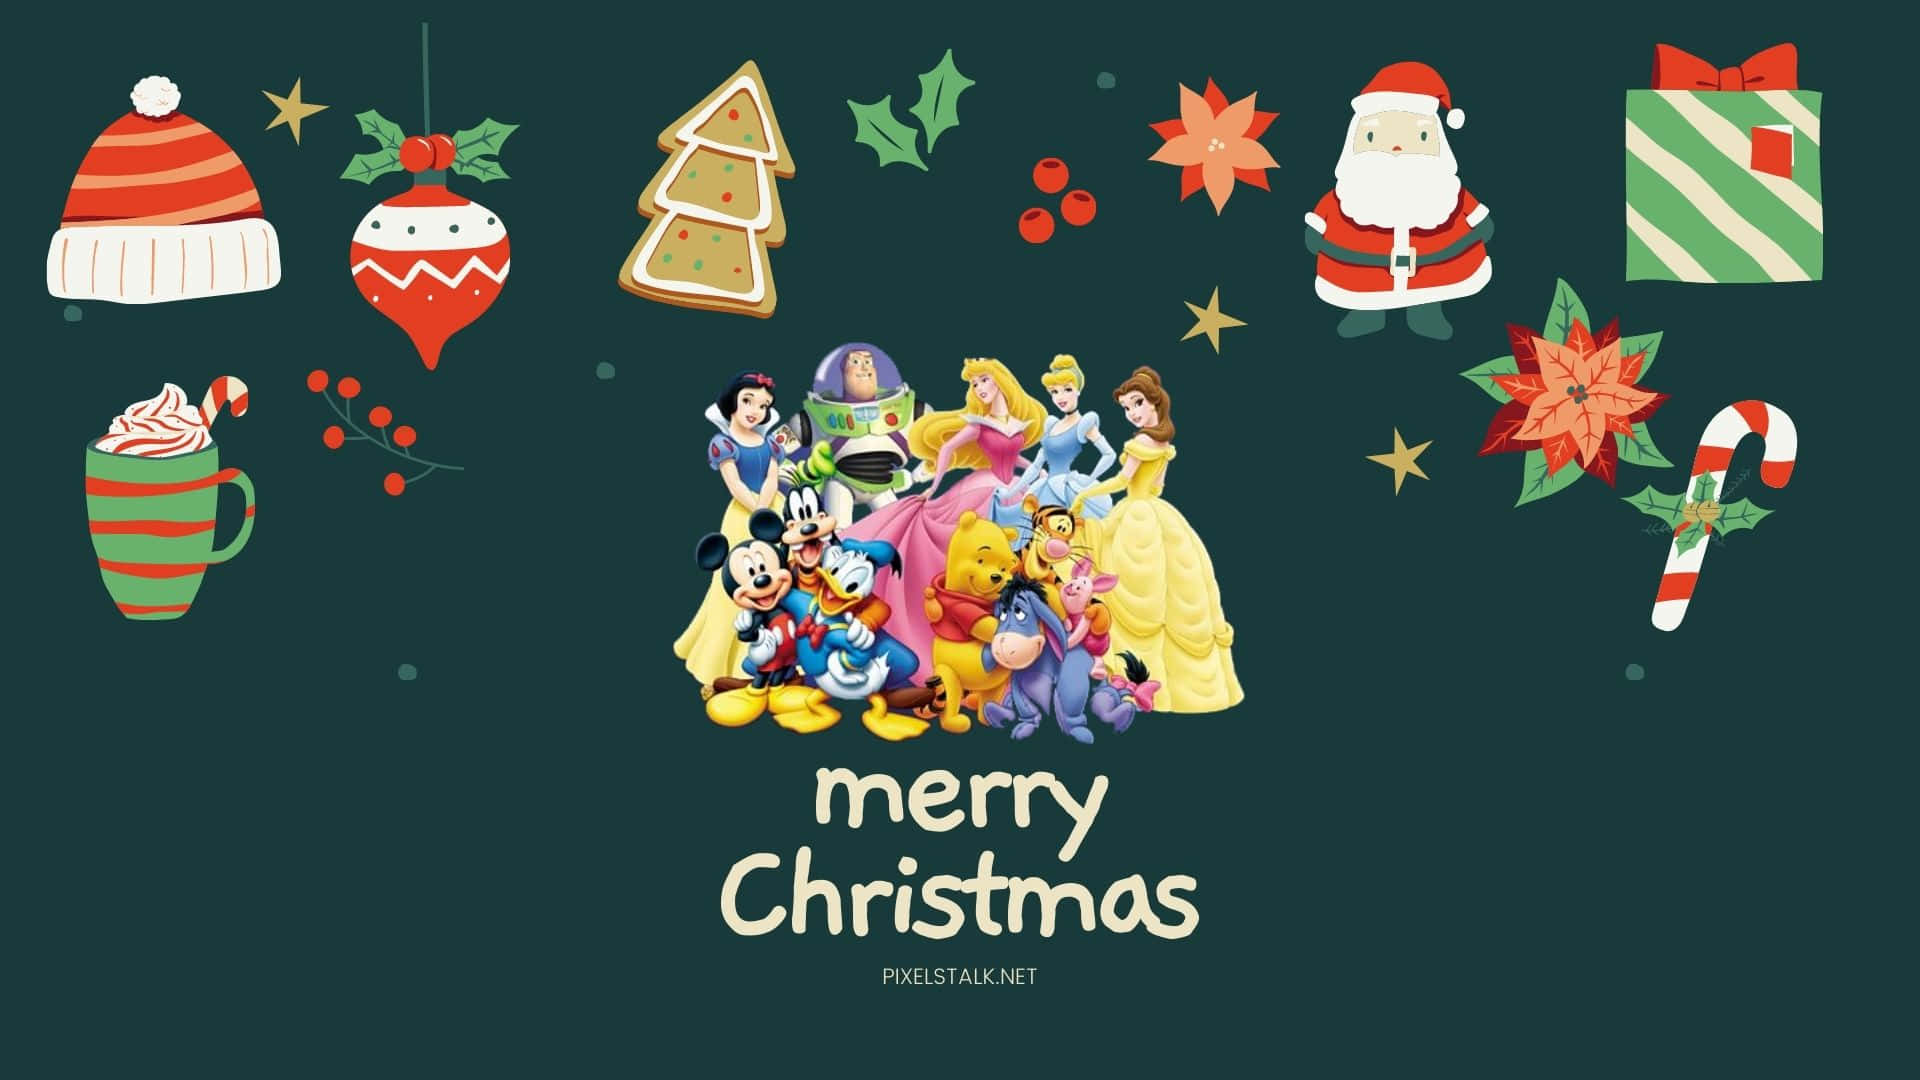 Verbreitensie In Dieser Saison Etwas Festliche Magie Mit Einem Weihnachtlichen Ipad Im Disney-stil. Wallpaper